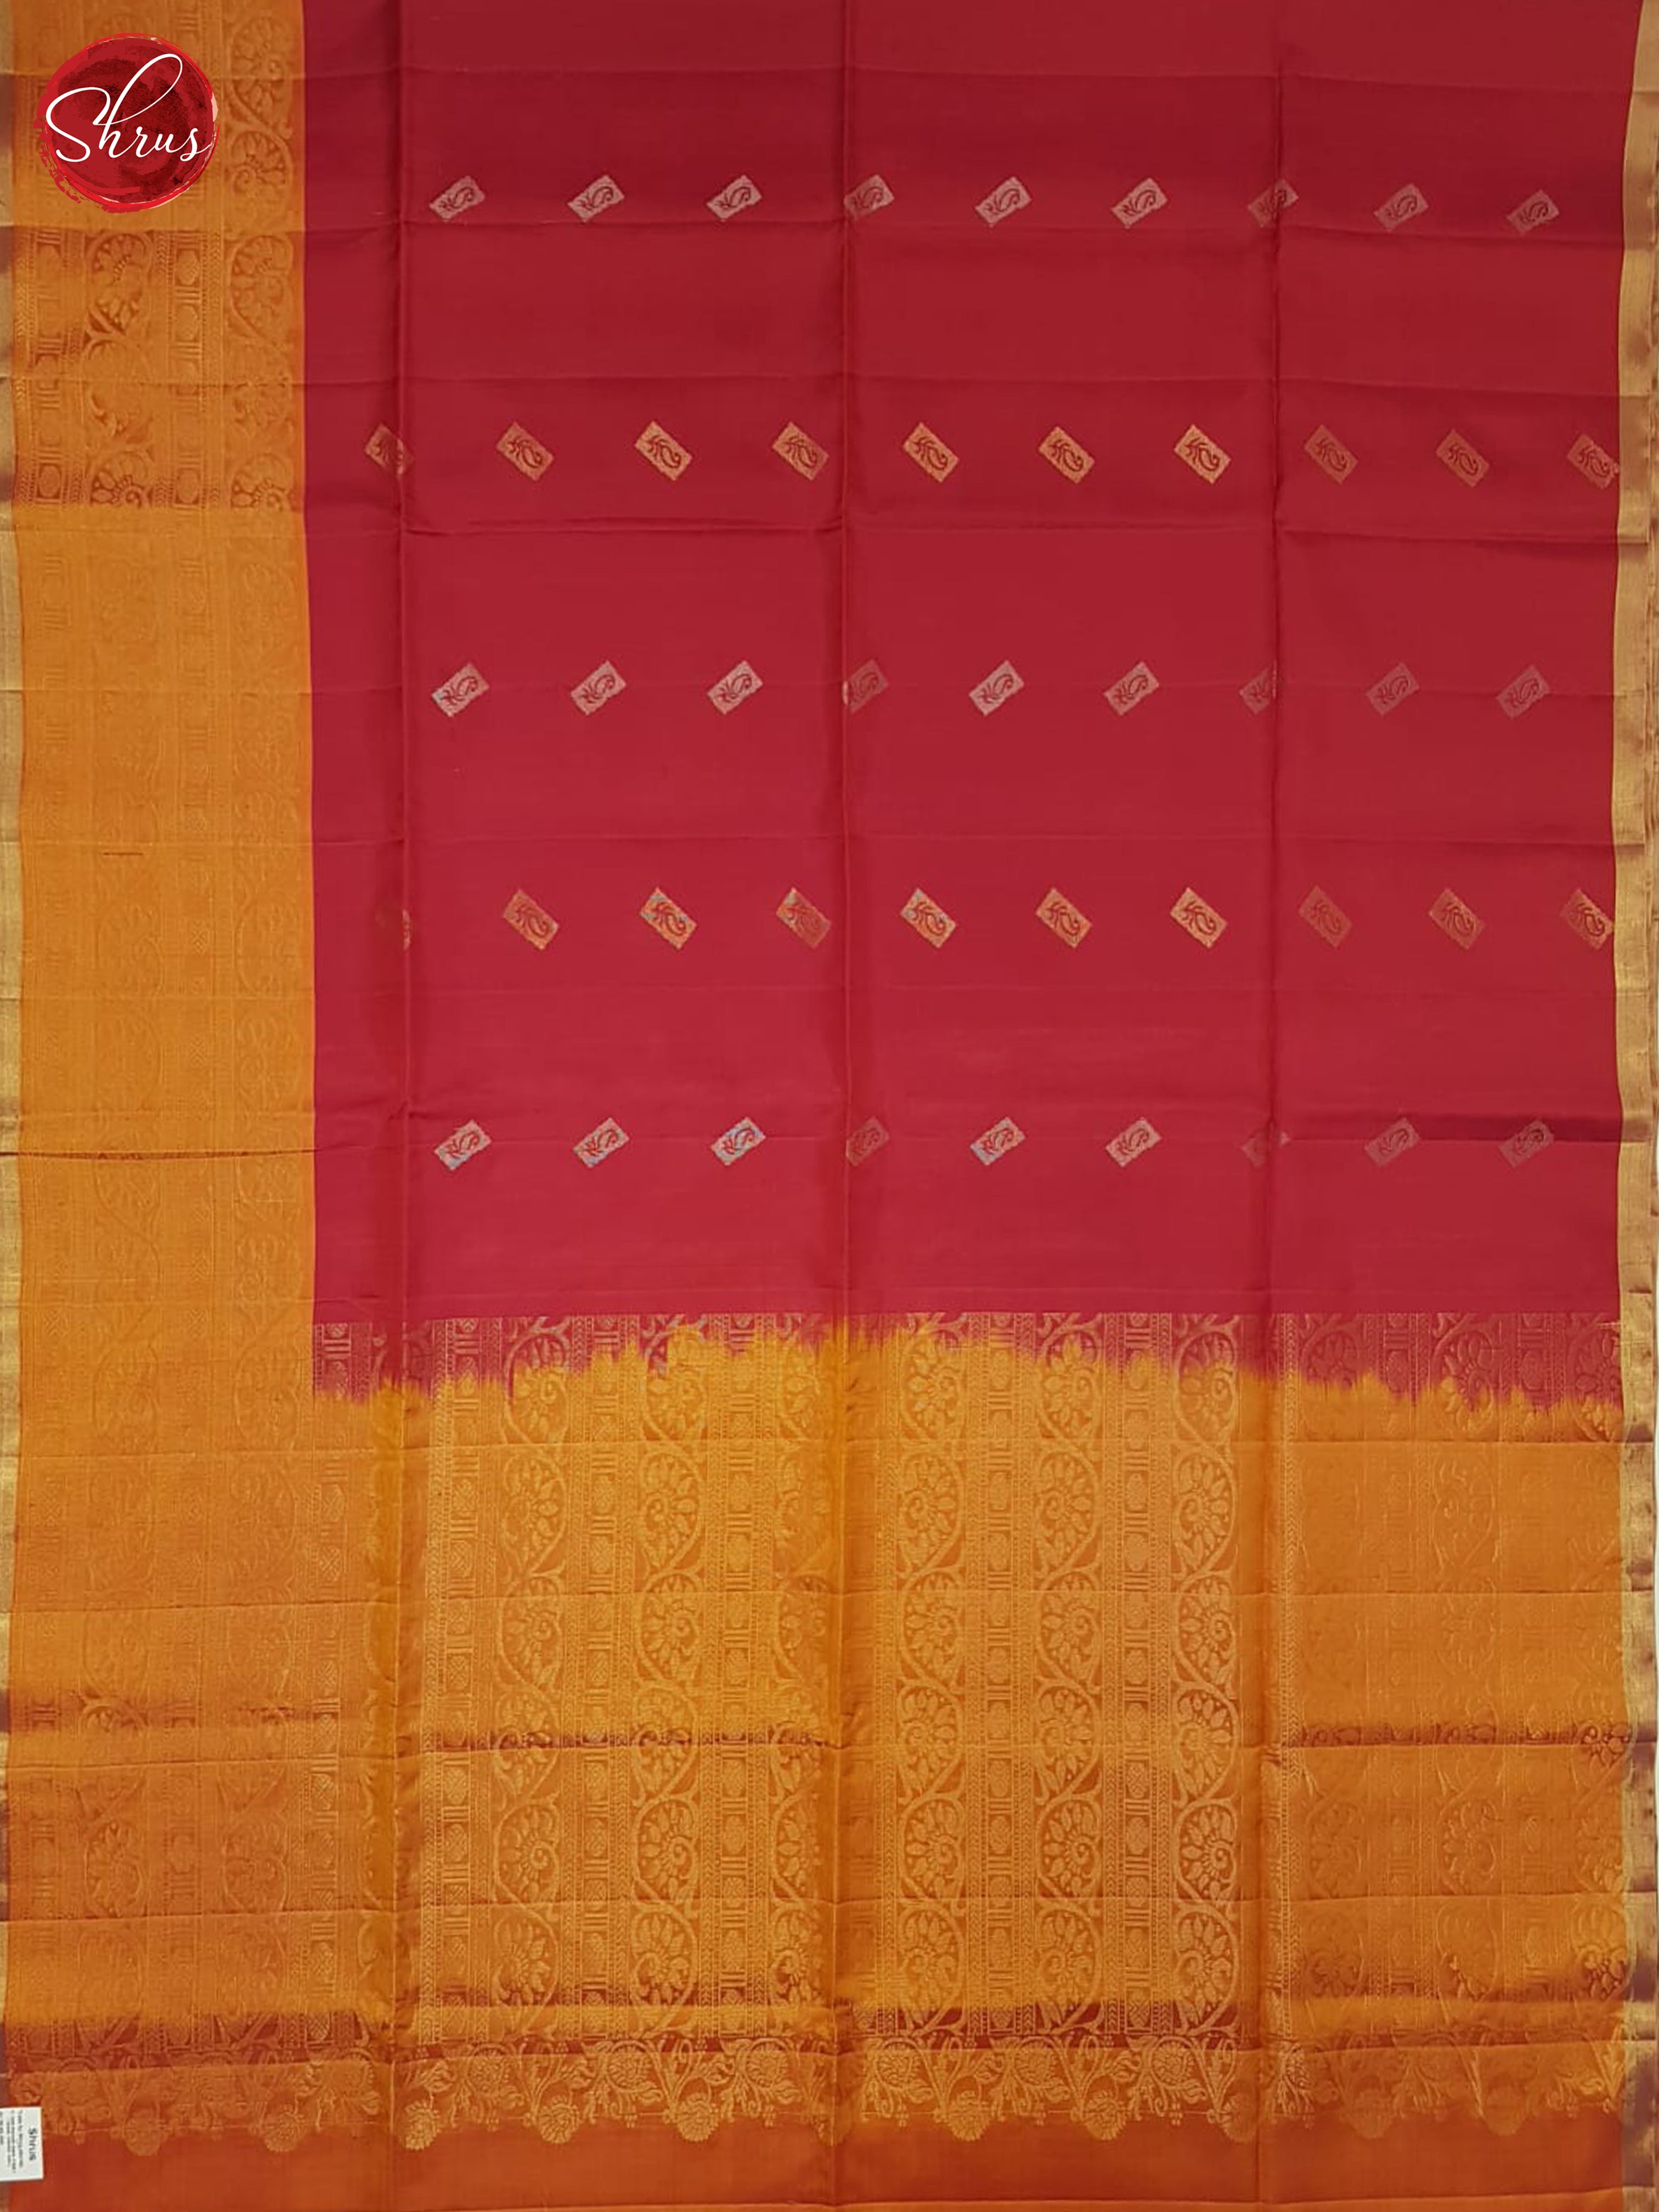 Red & Orange- Soft Silk Halfpure Saree - Shop on ShrusEternity.com